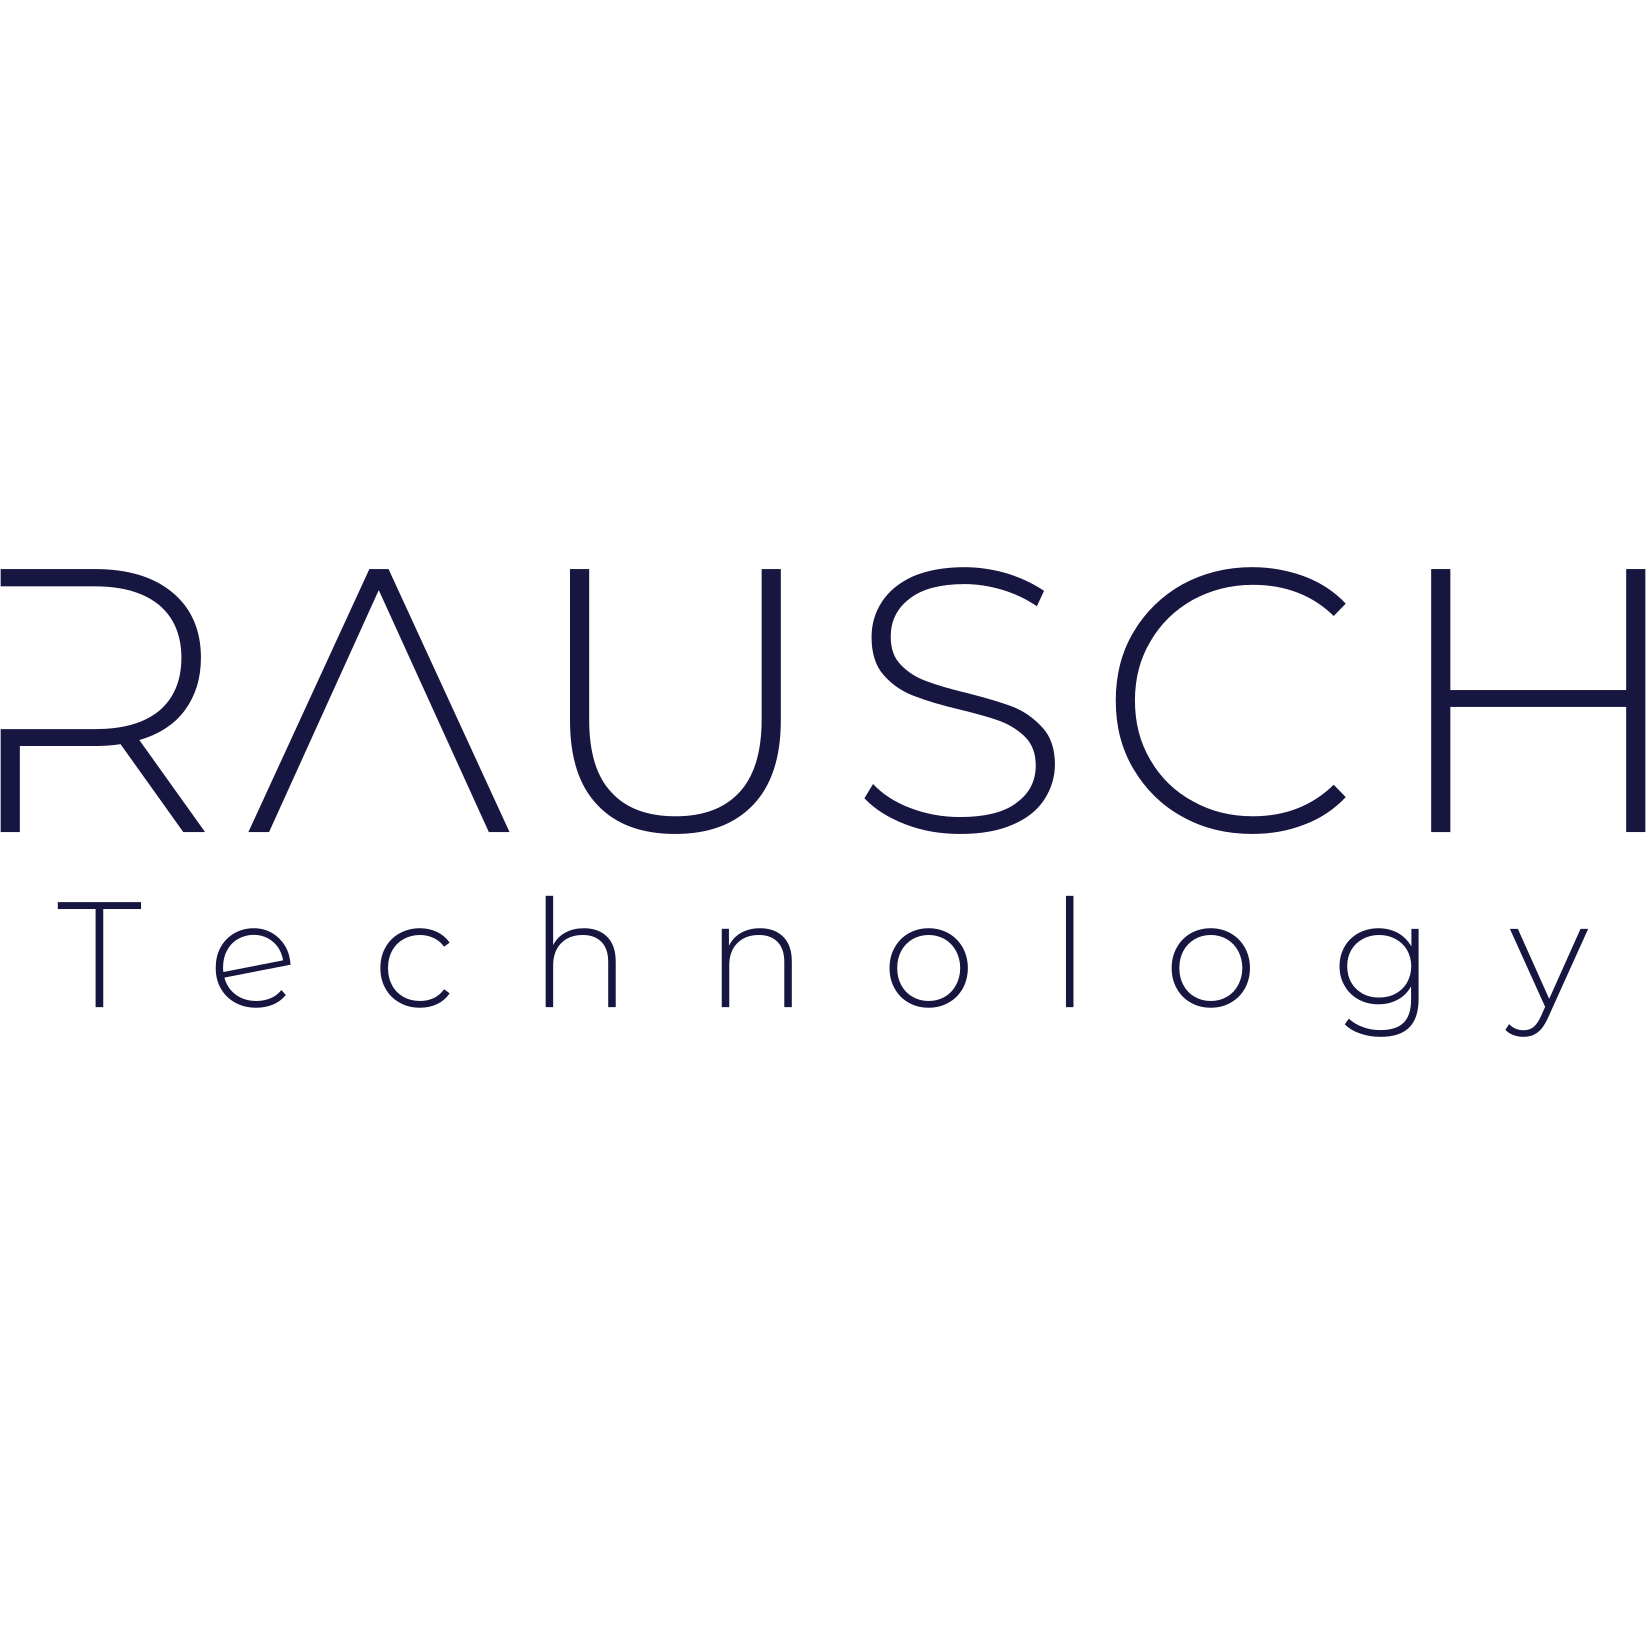 Rausch Technology